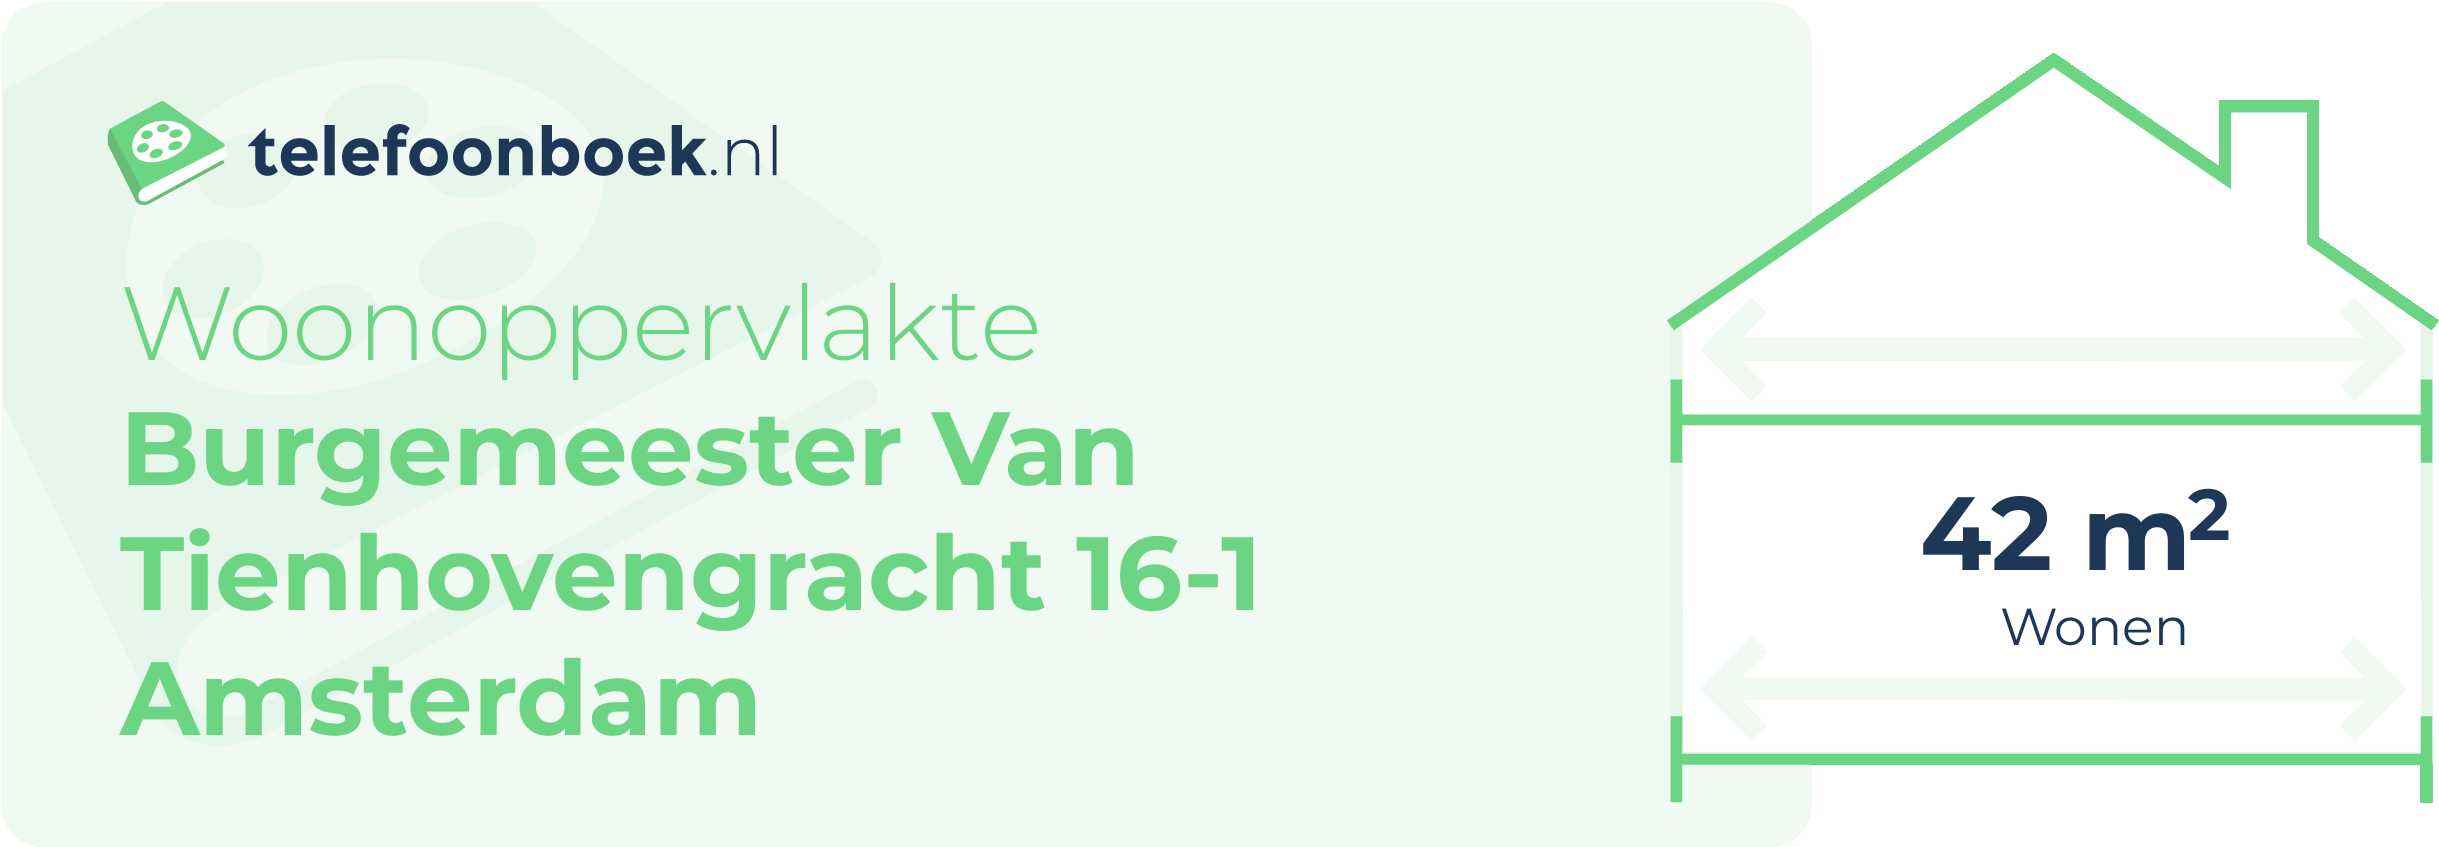 Woonoppervlakte Burgemeester Van Tienhovengracht 16-1 Amsterdam